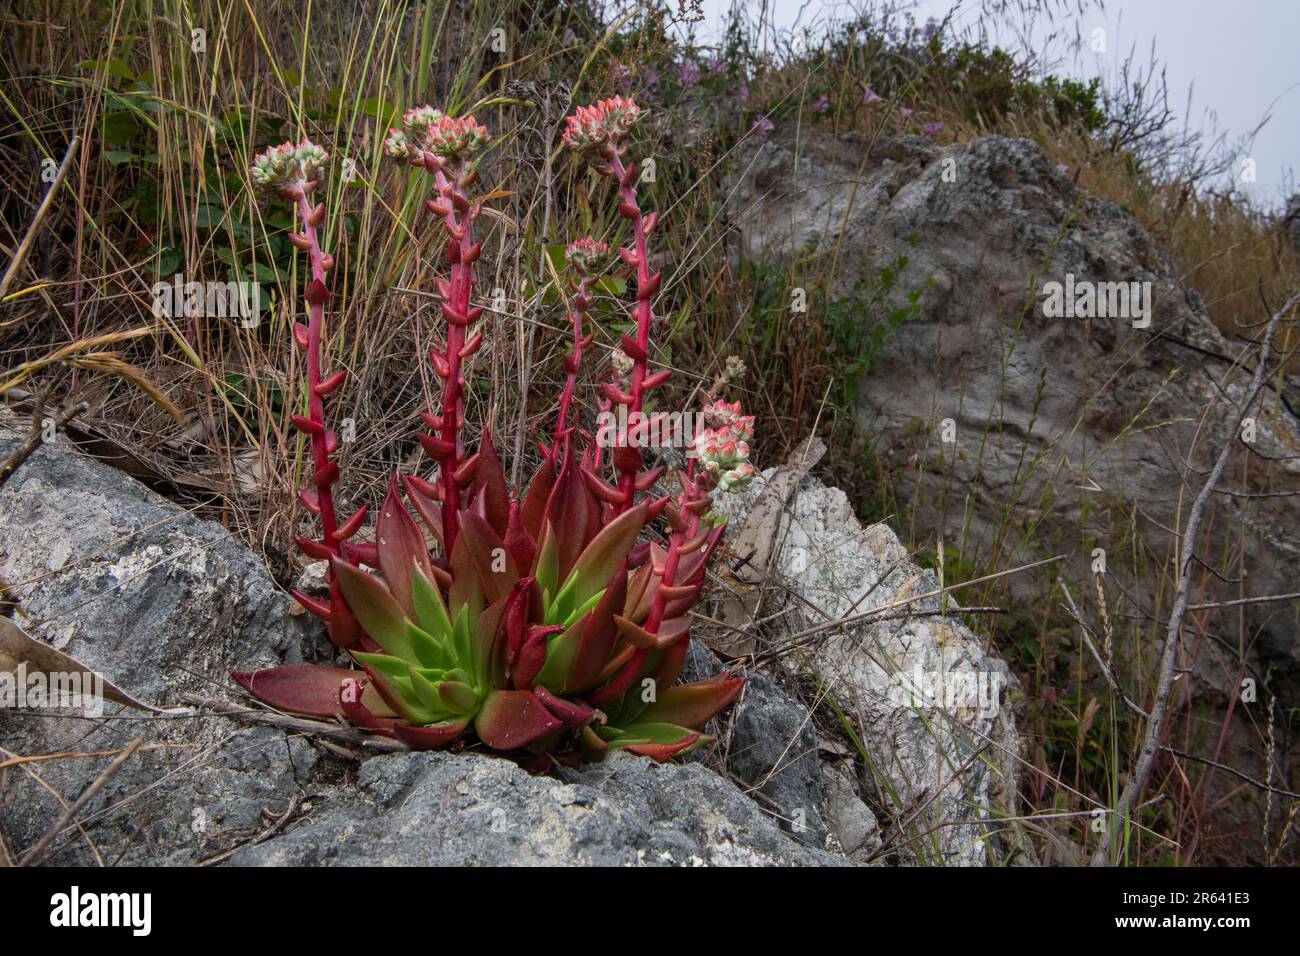 Canyon Dudleya ou live-Forever, Dudleya cymosa, une plante indigène succulente de la Californie floraison à point Reyes National Seashore, CA. Banque D'Images